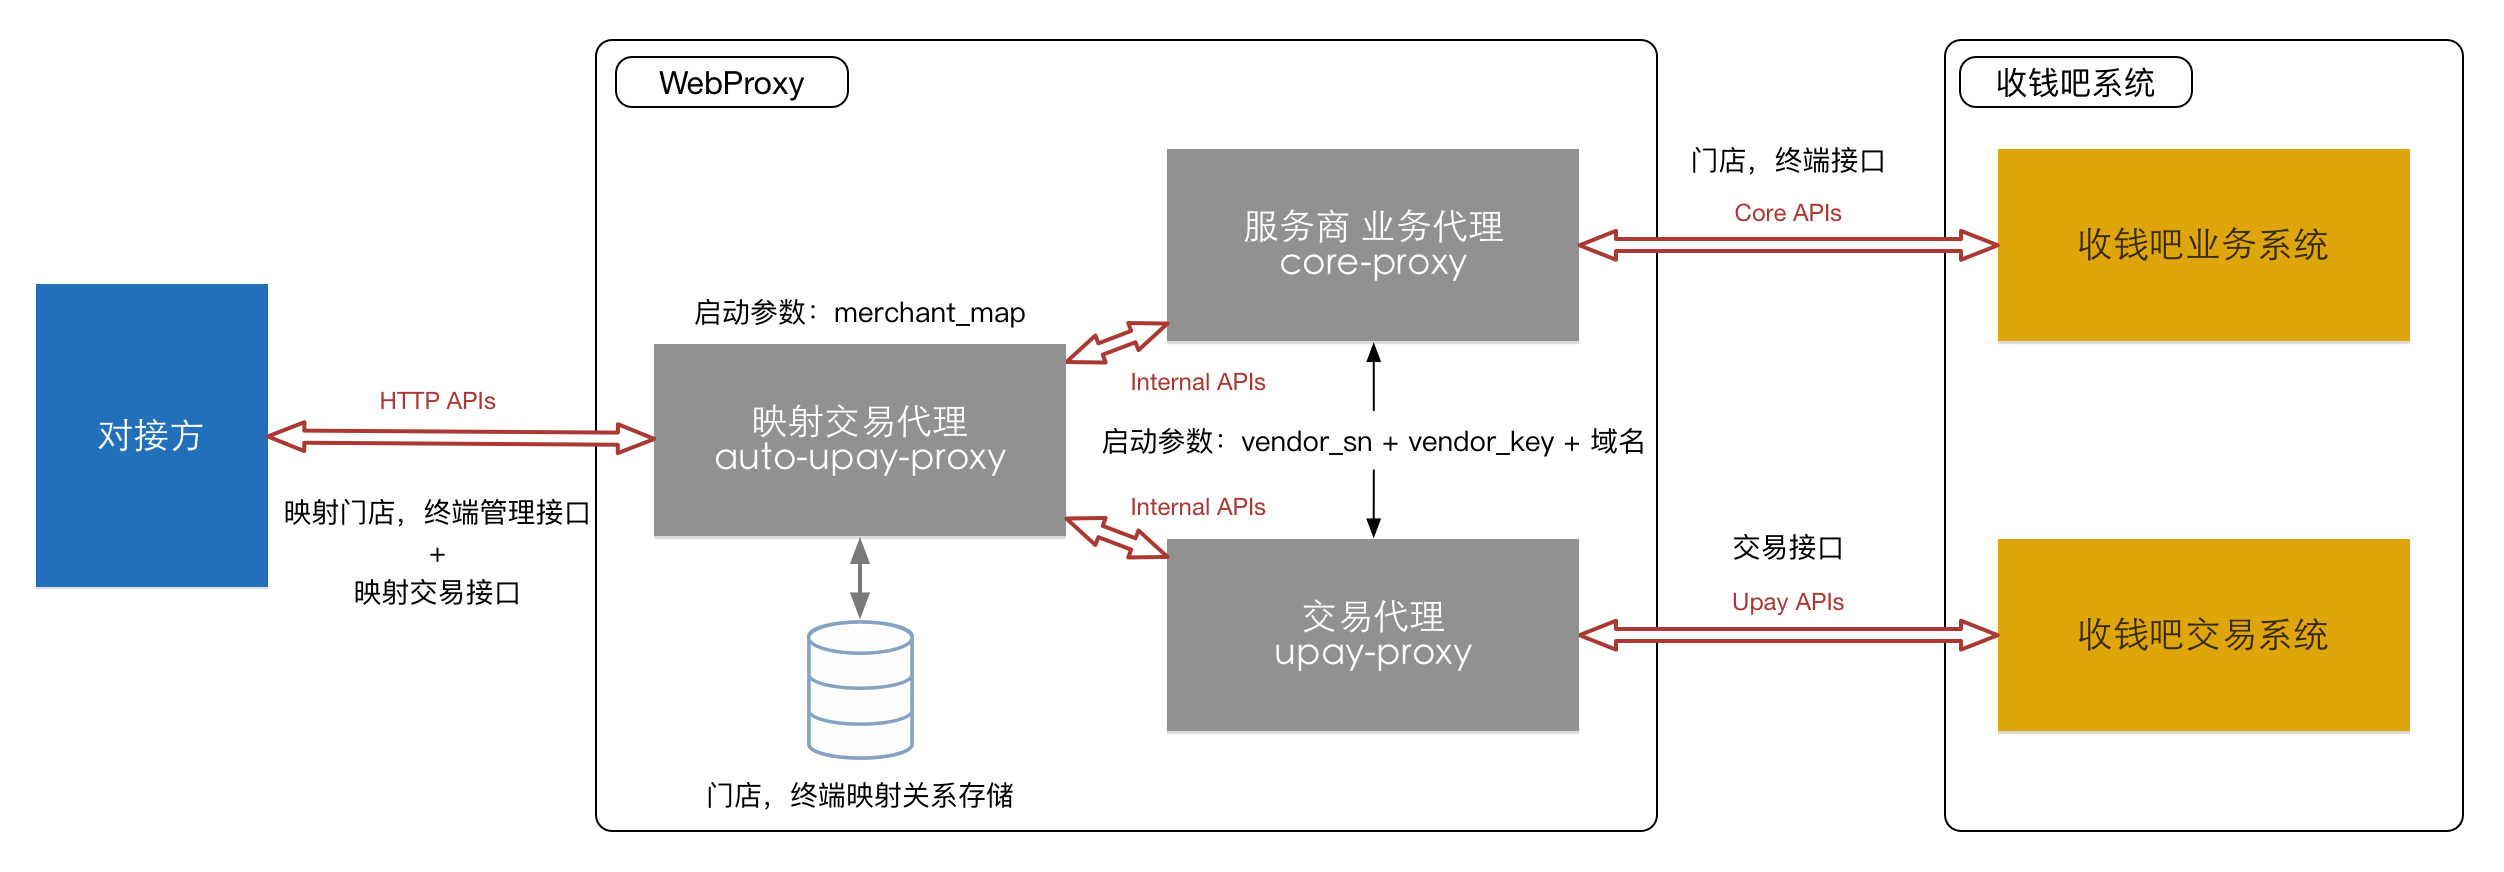 WebProxy系统边界框架图1